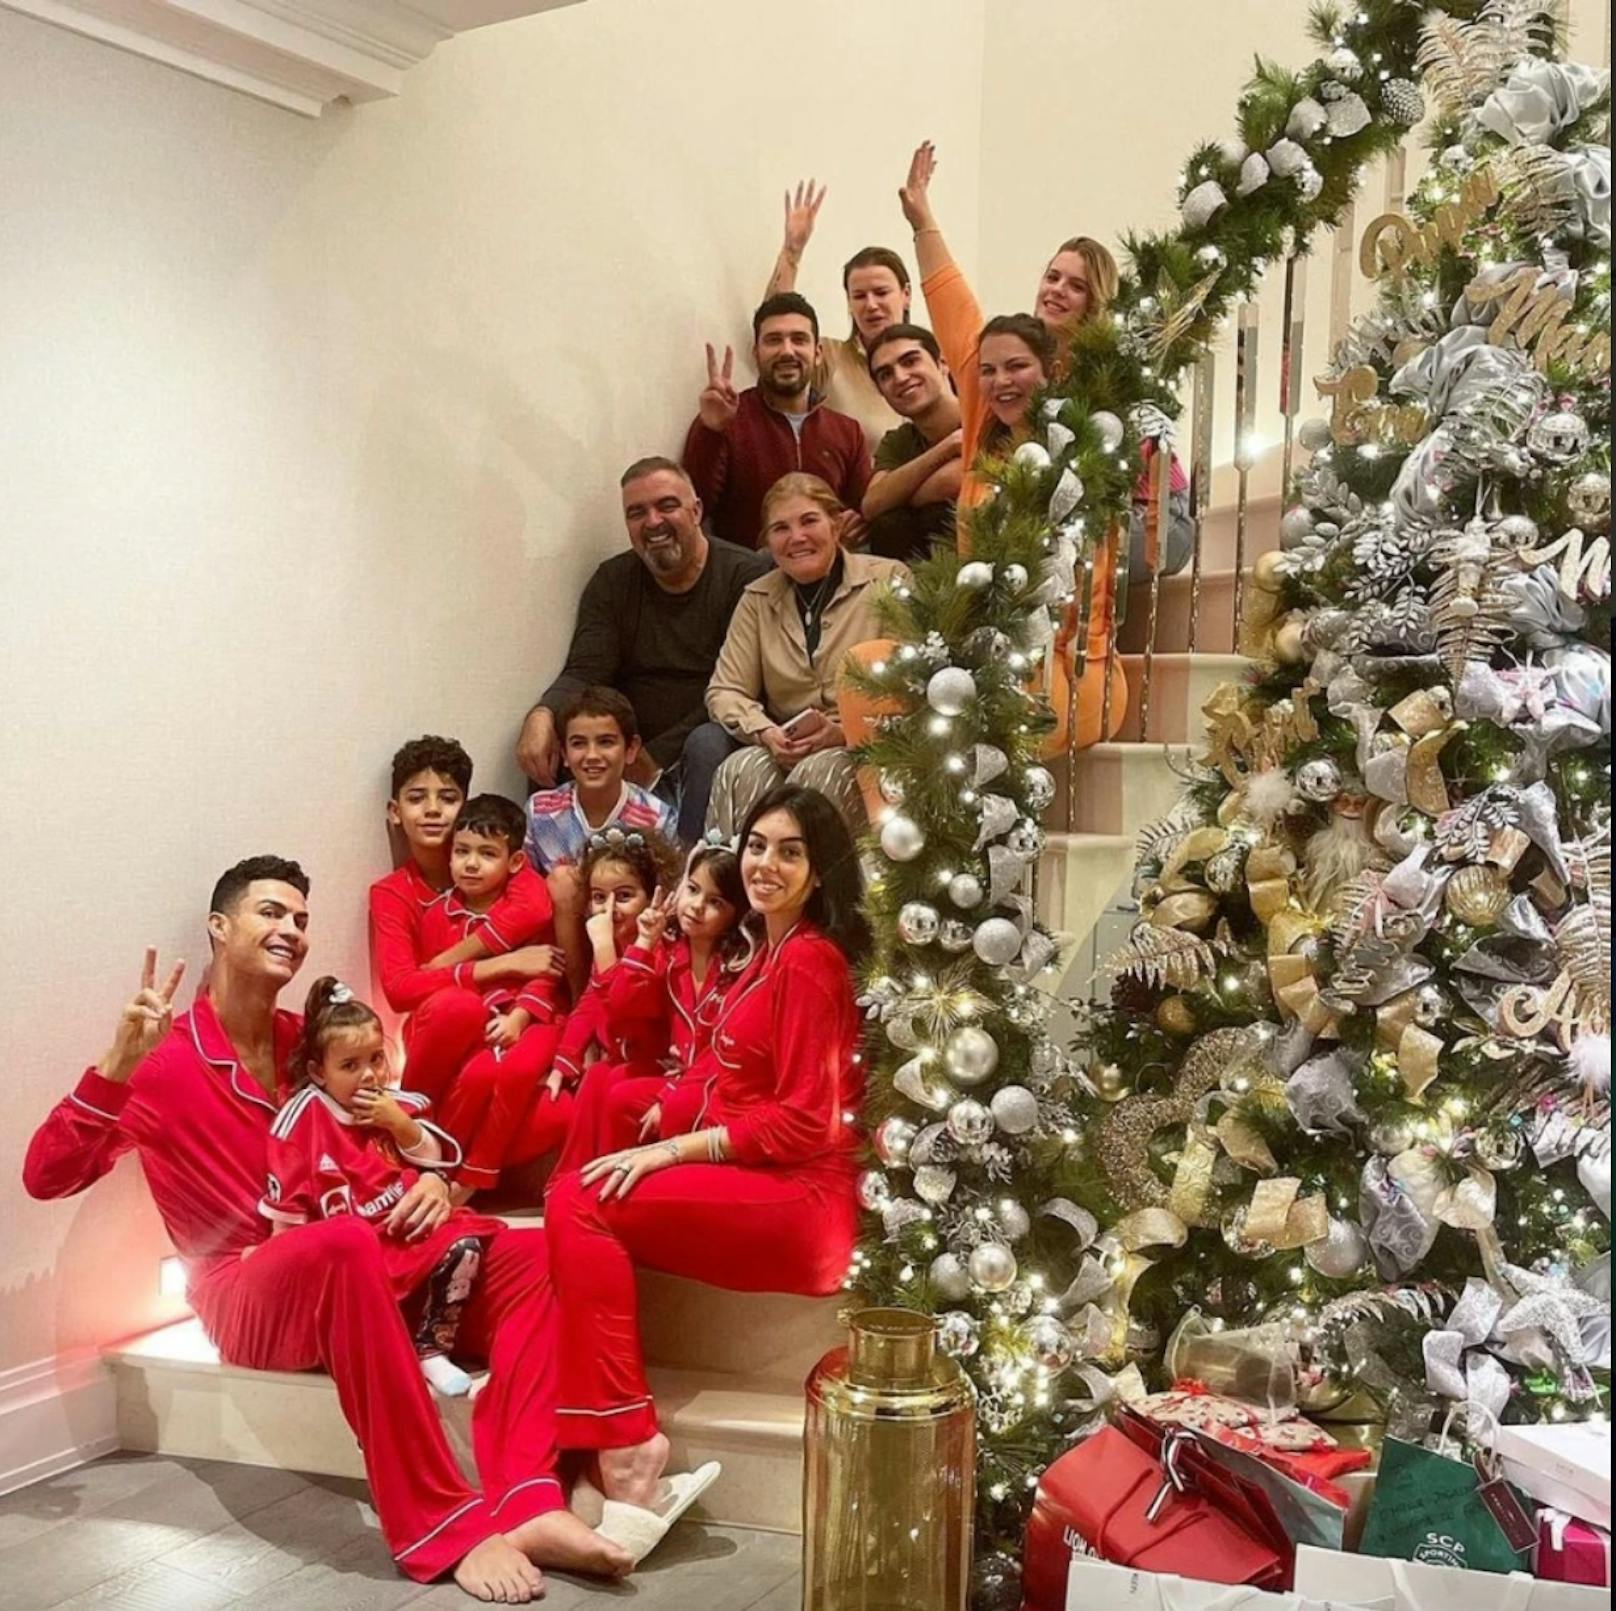 Cristiano Ronaldo feiert Weihnachten mit der Familie.